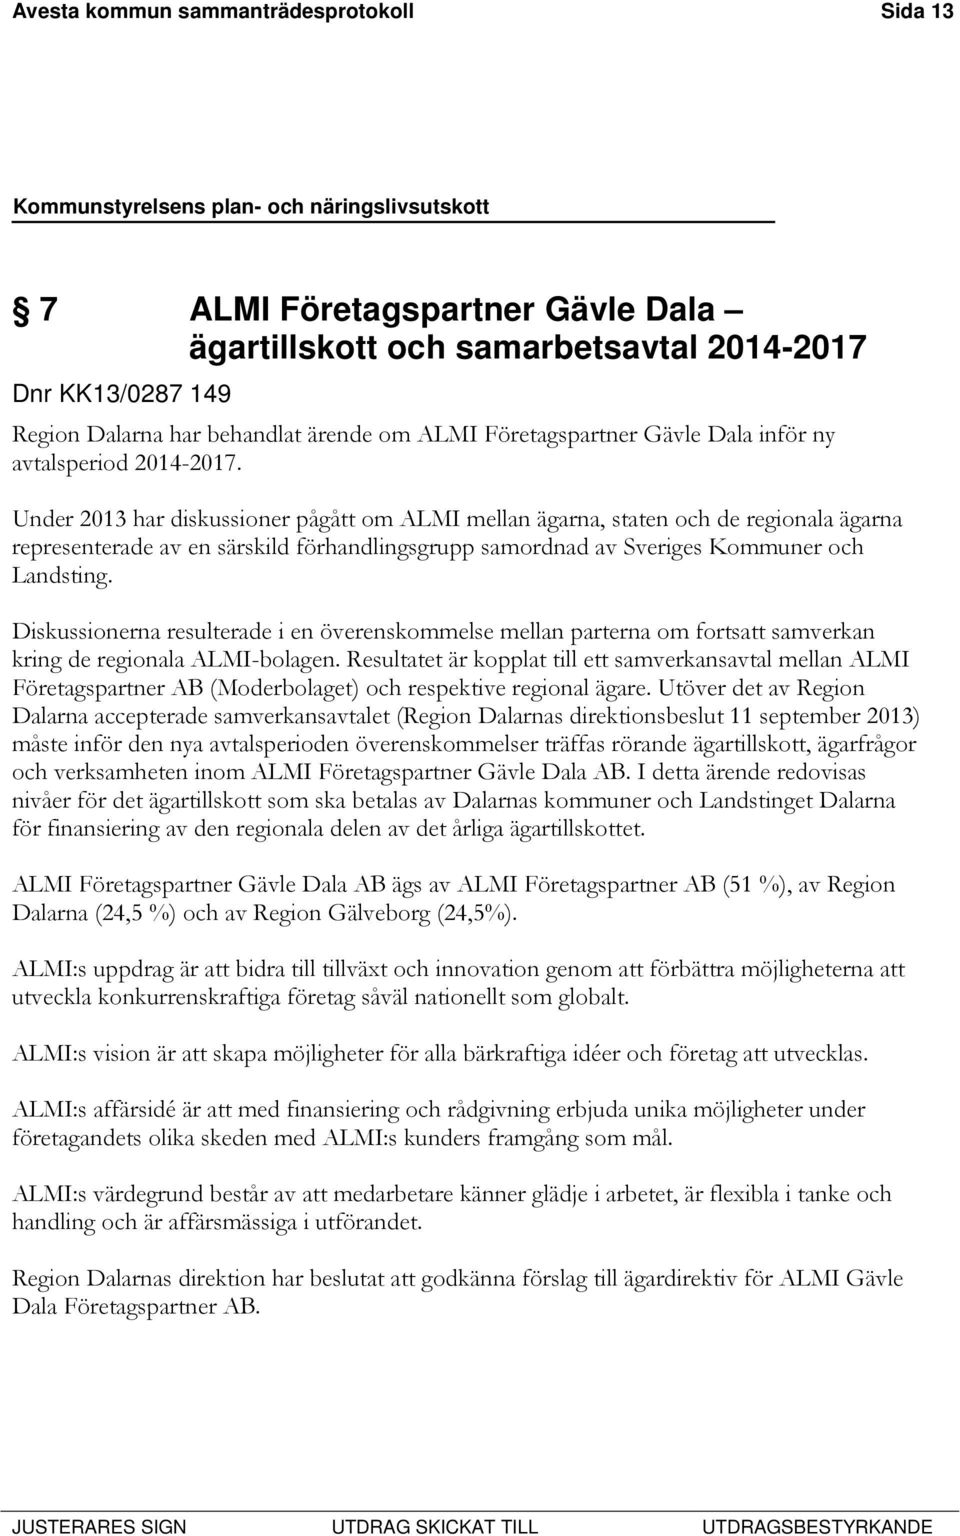 Under 2013 har diskussioner pågått om ALMI mellan ägarna, staten och de regionala ägarna representerade av en särskild förhandlingsgrupp samordnad av Sveriges Kommuner och Landsting.